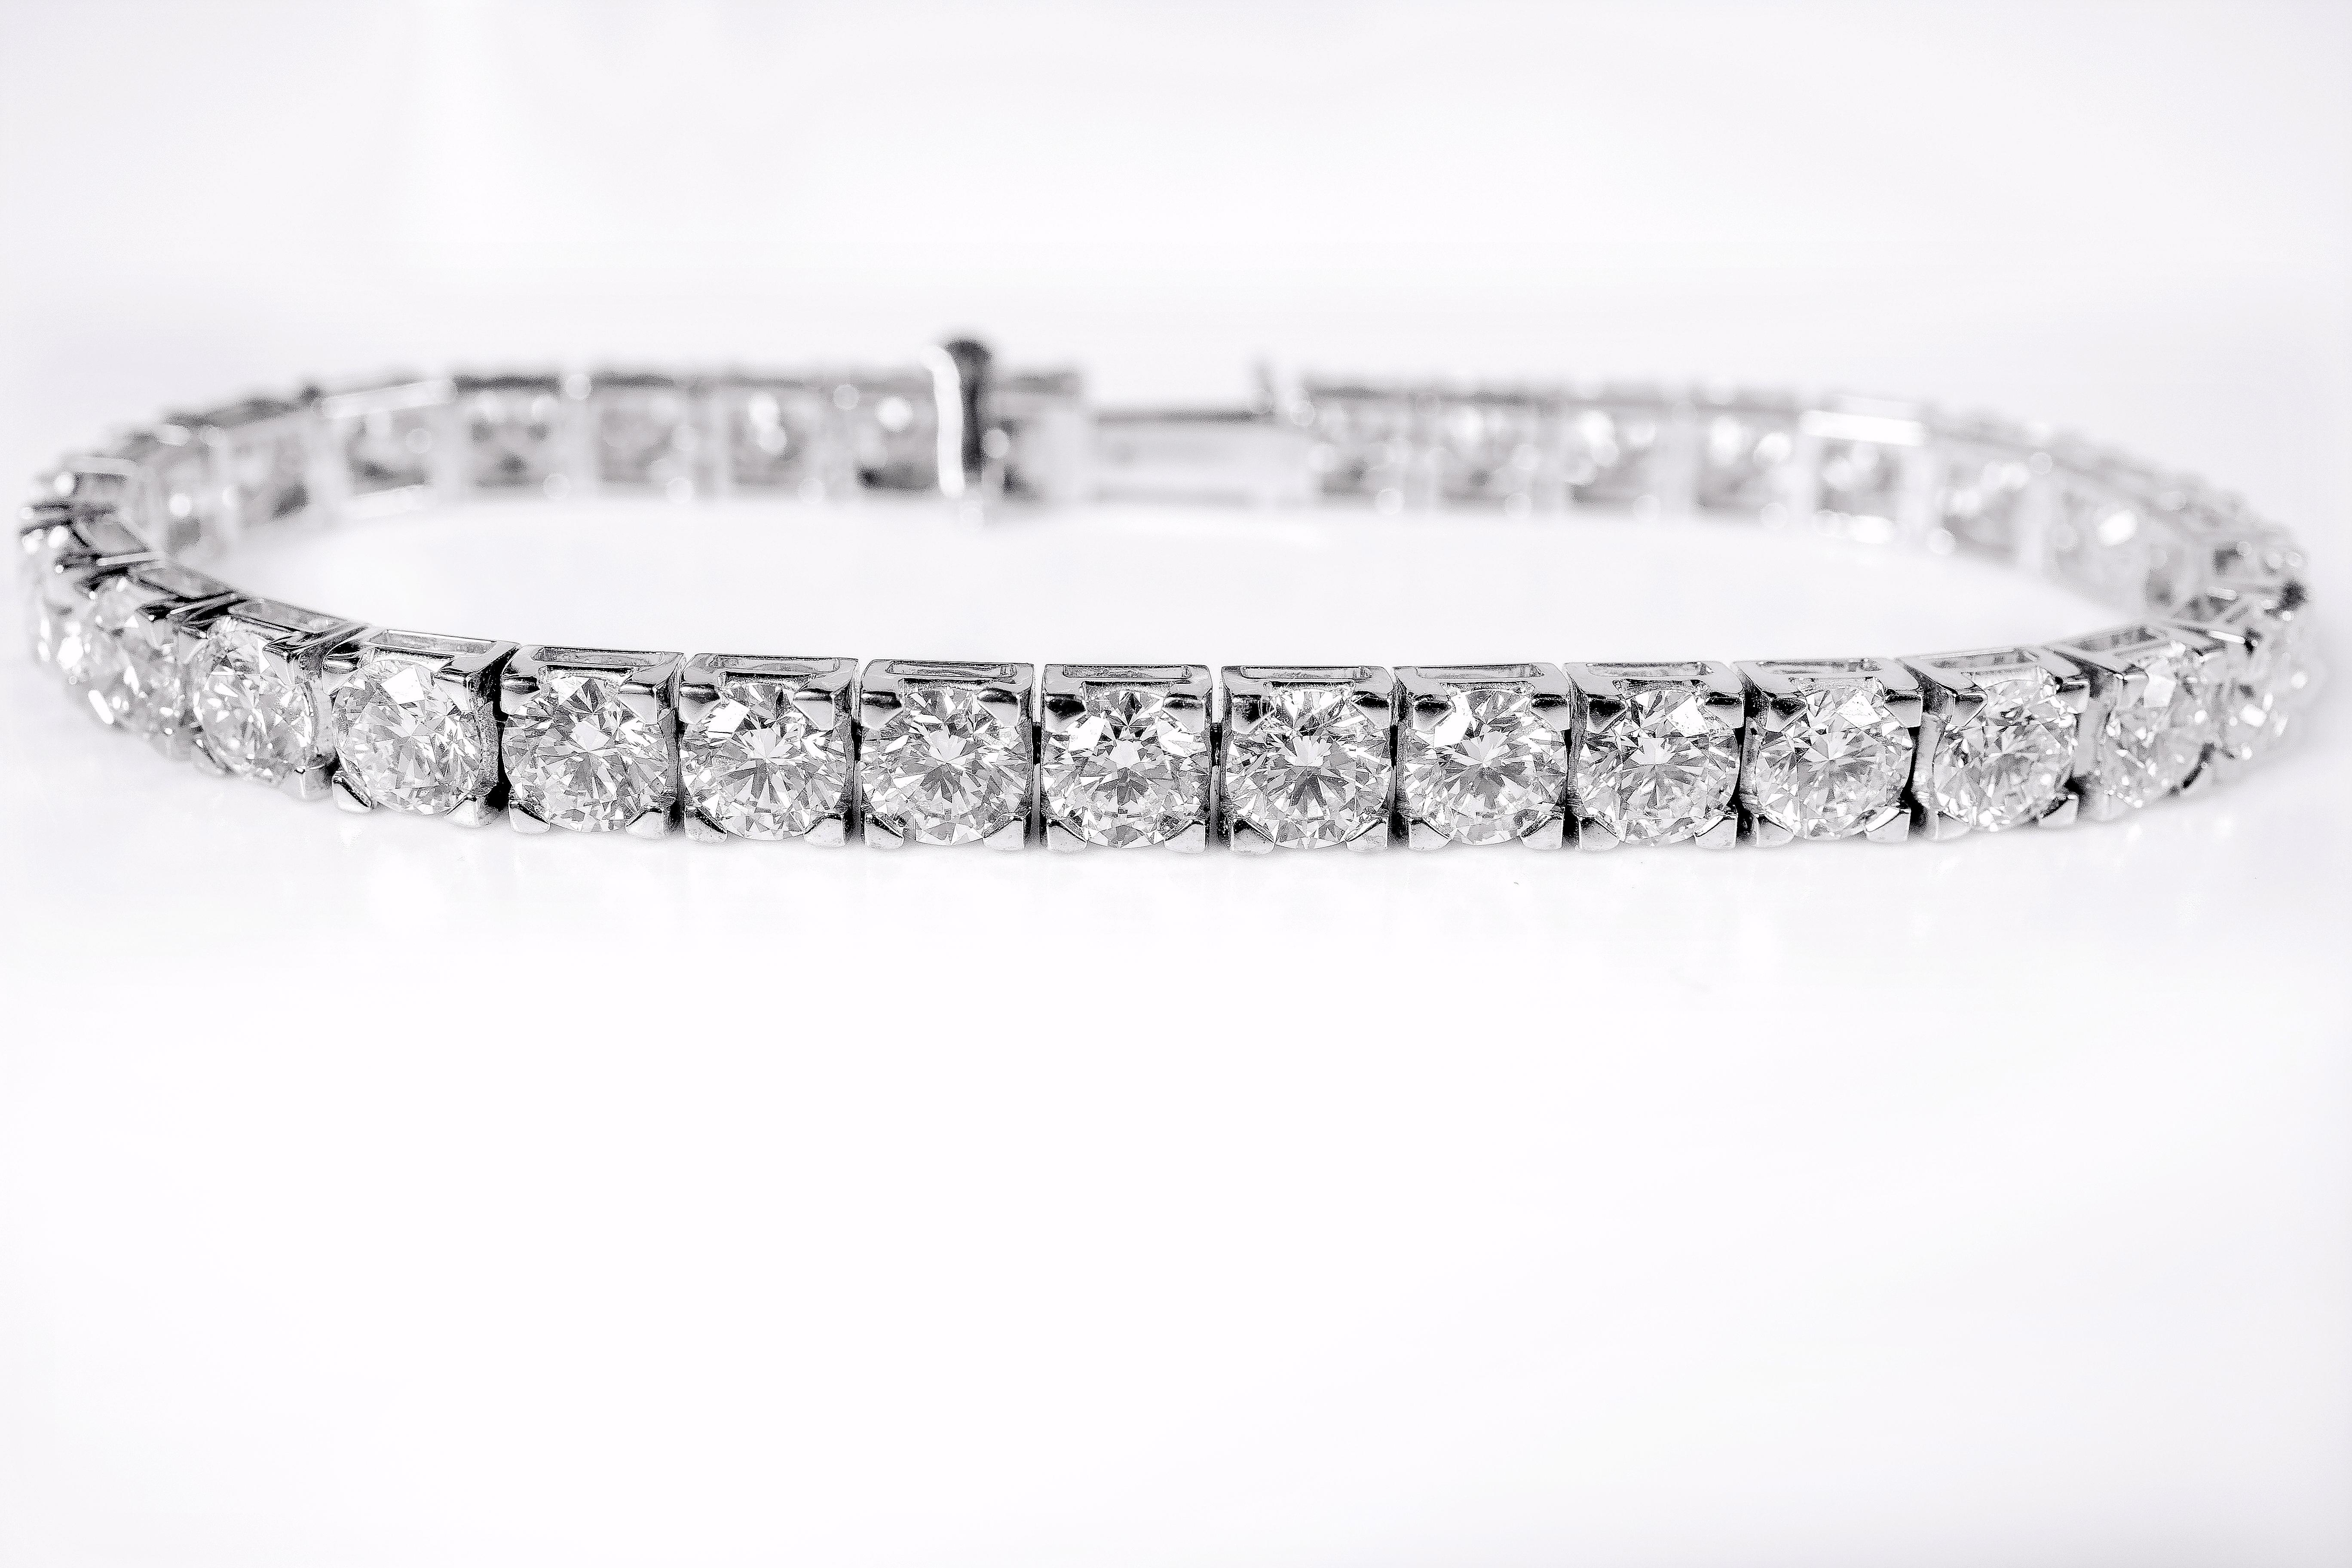 bracelet de tennis en or 18 carats, solitaire certifié GIA de 17,97 carats, taille brillant 

Ce magnanime bracelet tennis en diamant solitaire est incrédule. Le bracelet tennis classique avec 33 diamants solitaires ronds identiques de 0,55 poinçon